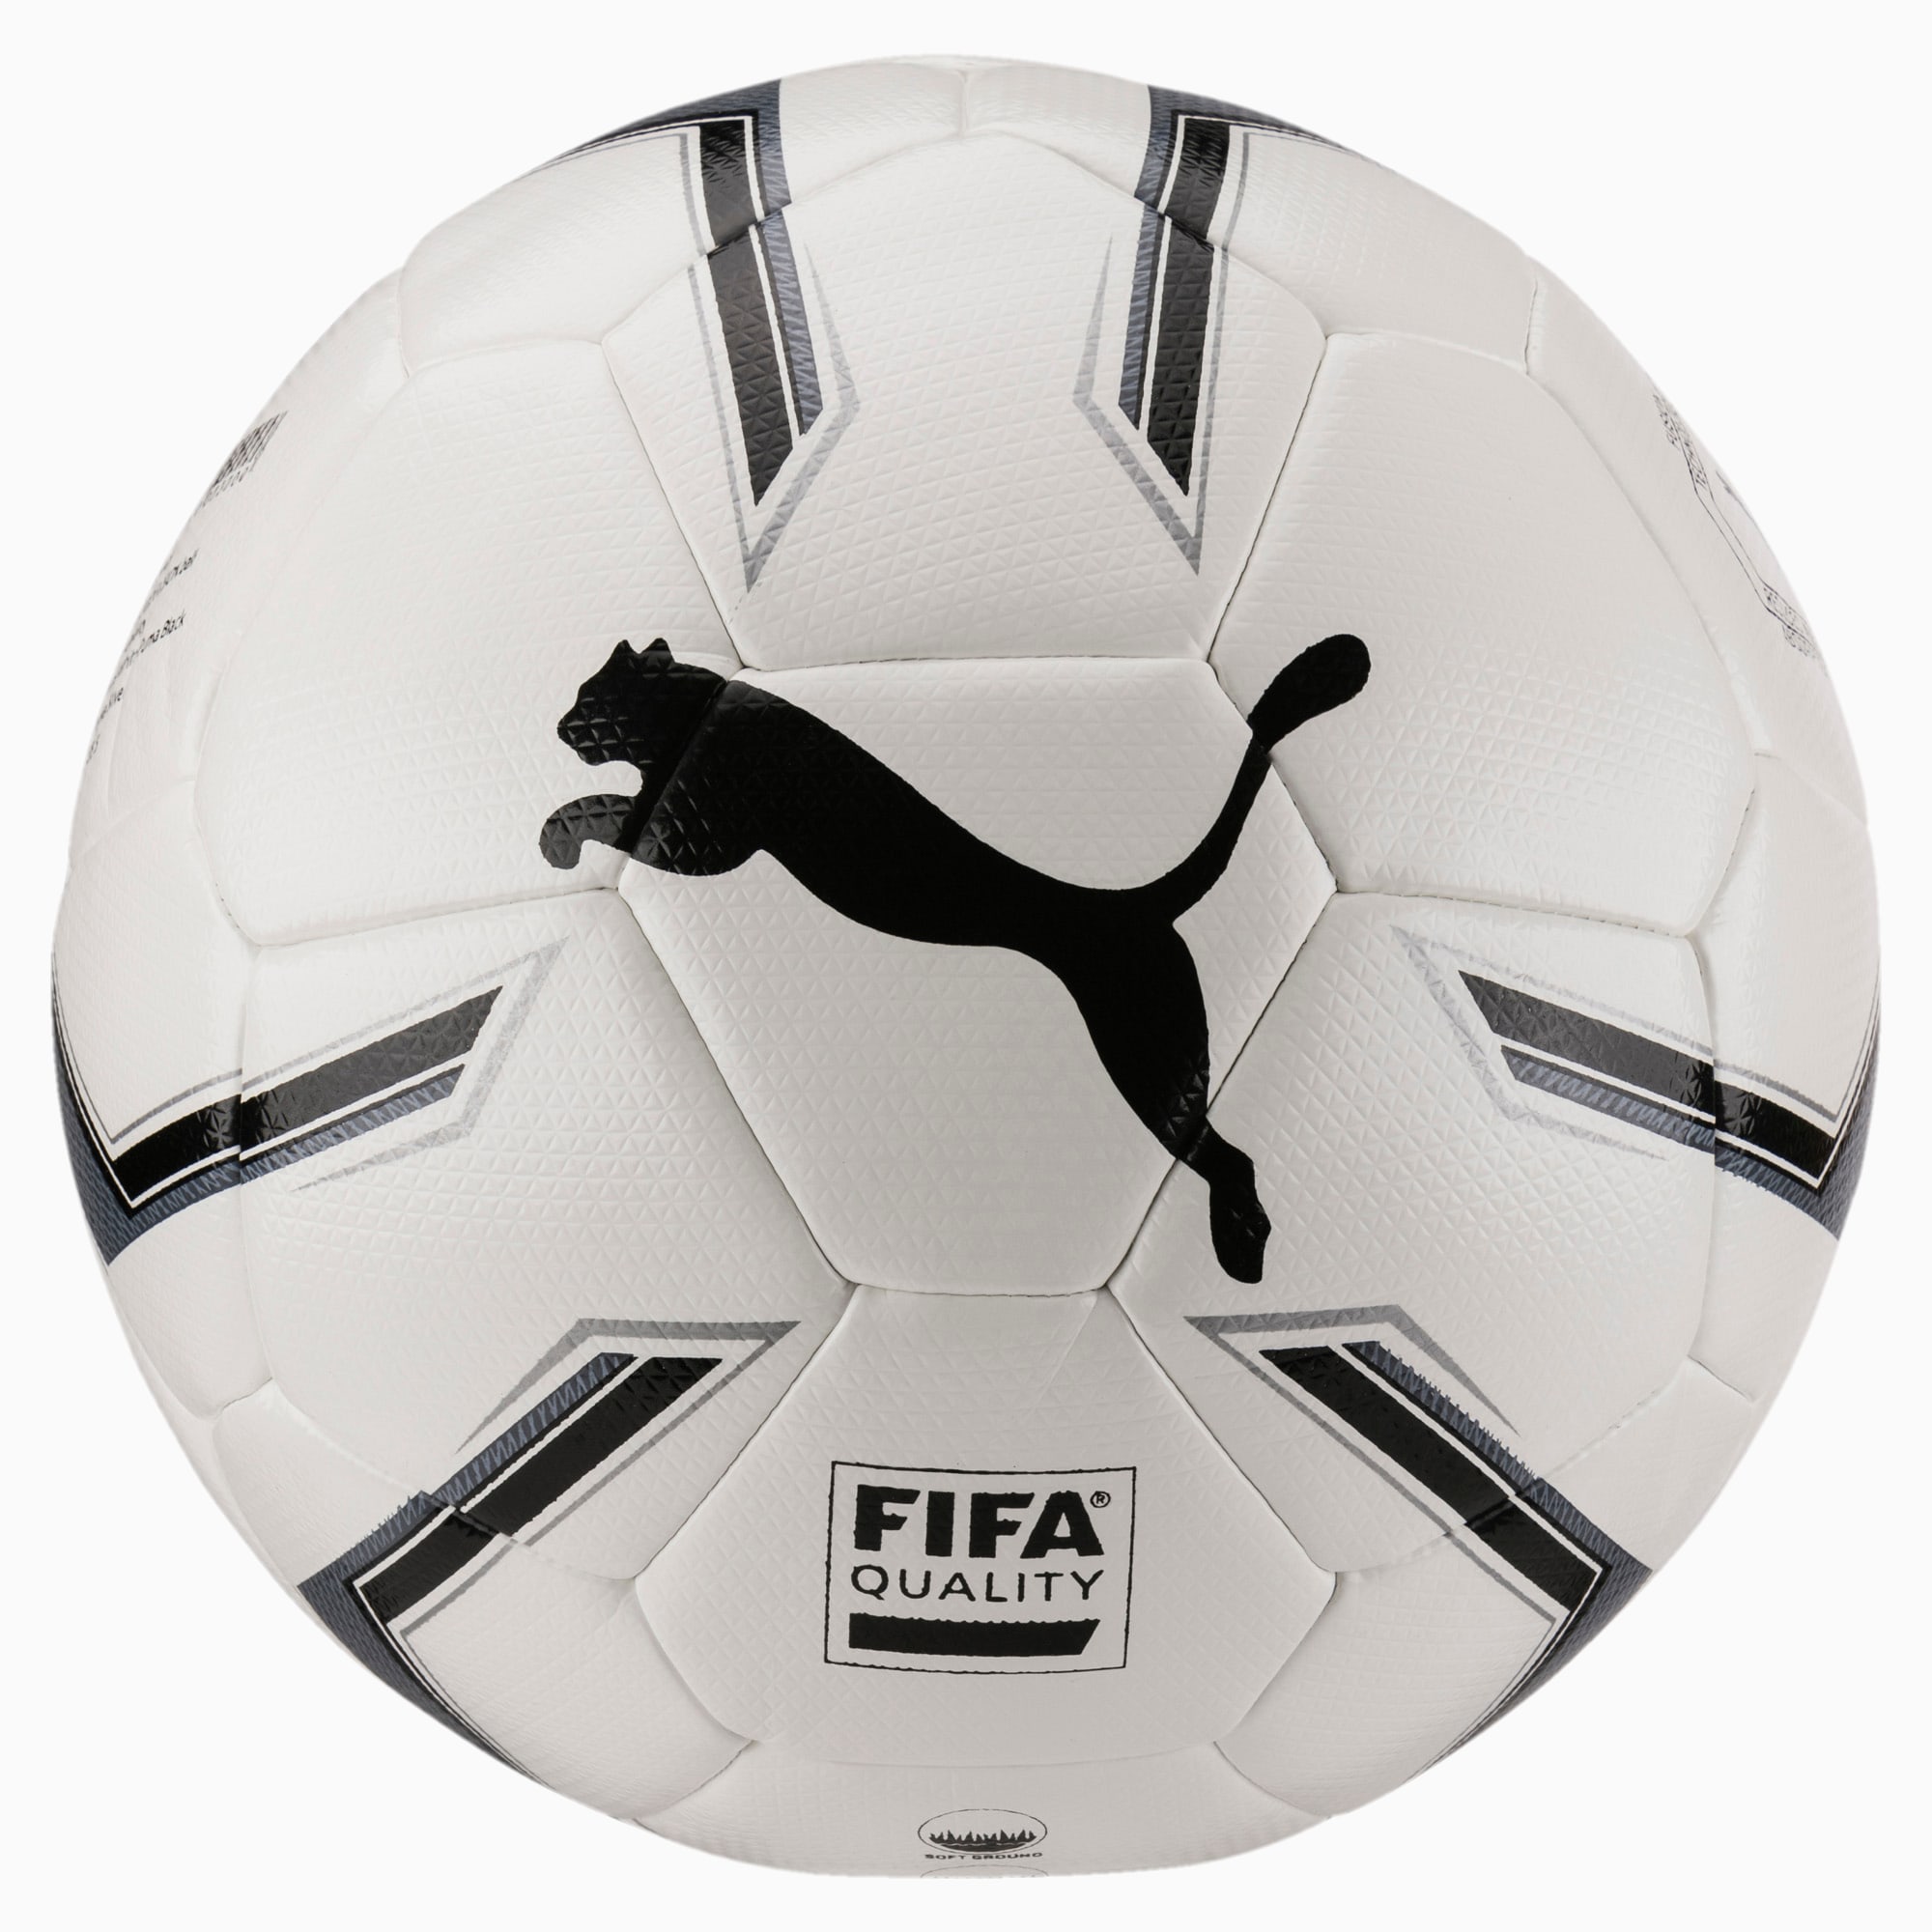 Puma公式 プーマエリート 2 2 ハイブリット Fifa Quality ボール J プーマ サッカー プーマ